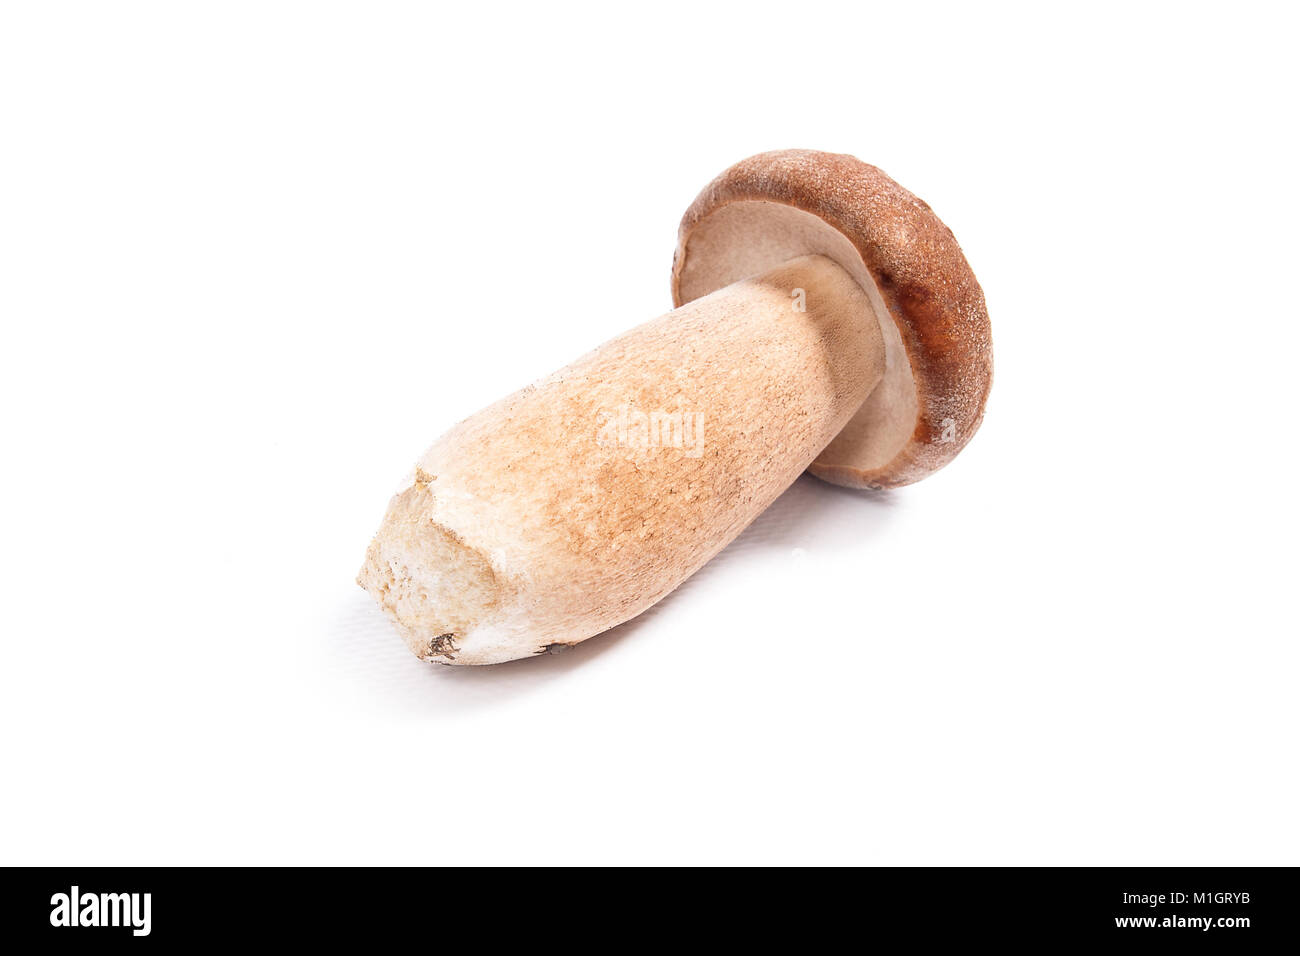 Récolté à l'automne étonnant champignon comestible boletus edulis (cèpes) connu sous le nom de champignons porcini isolé sur fond blanc. Banque D'Images